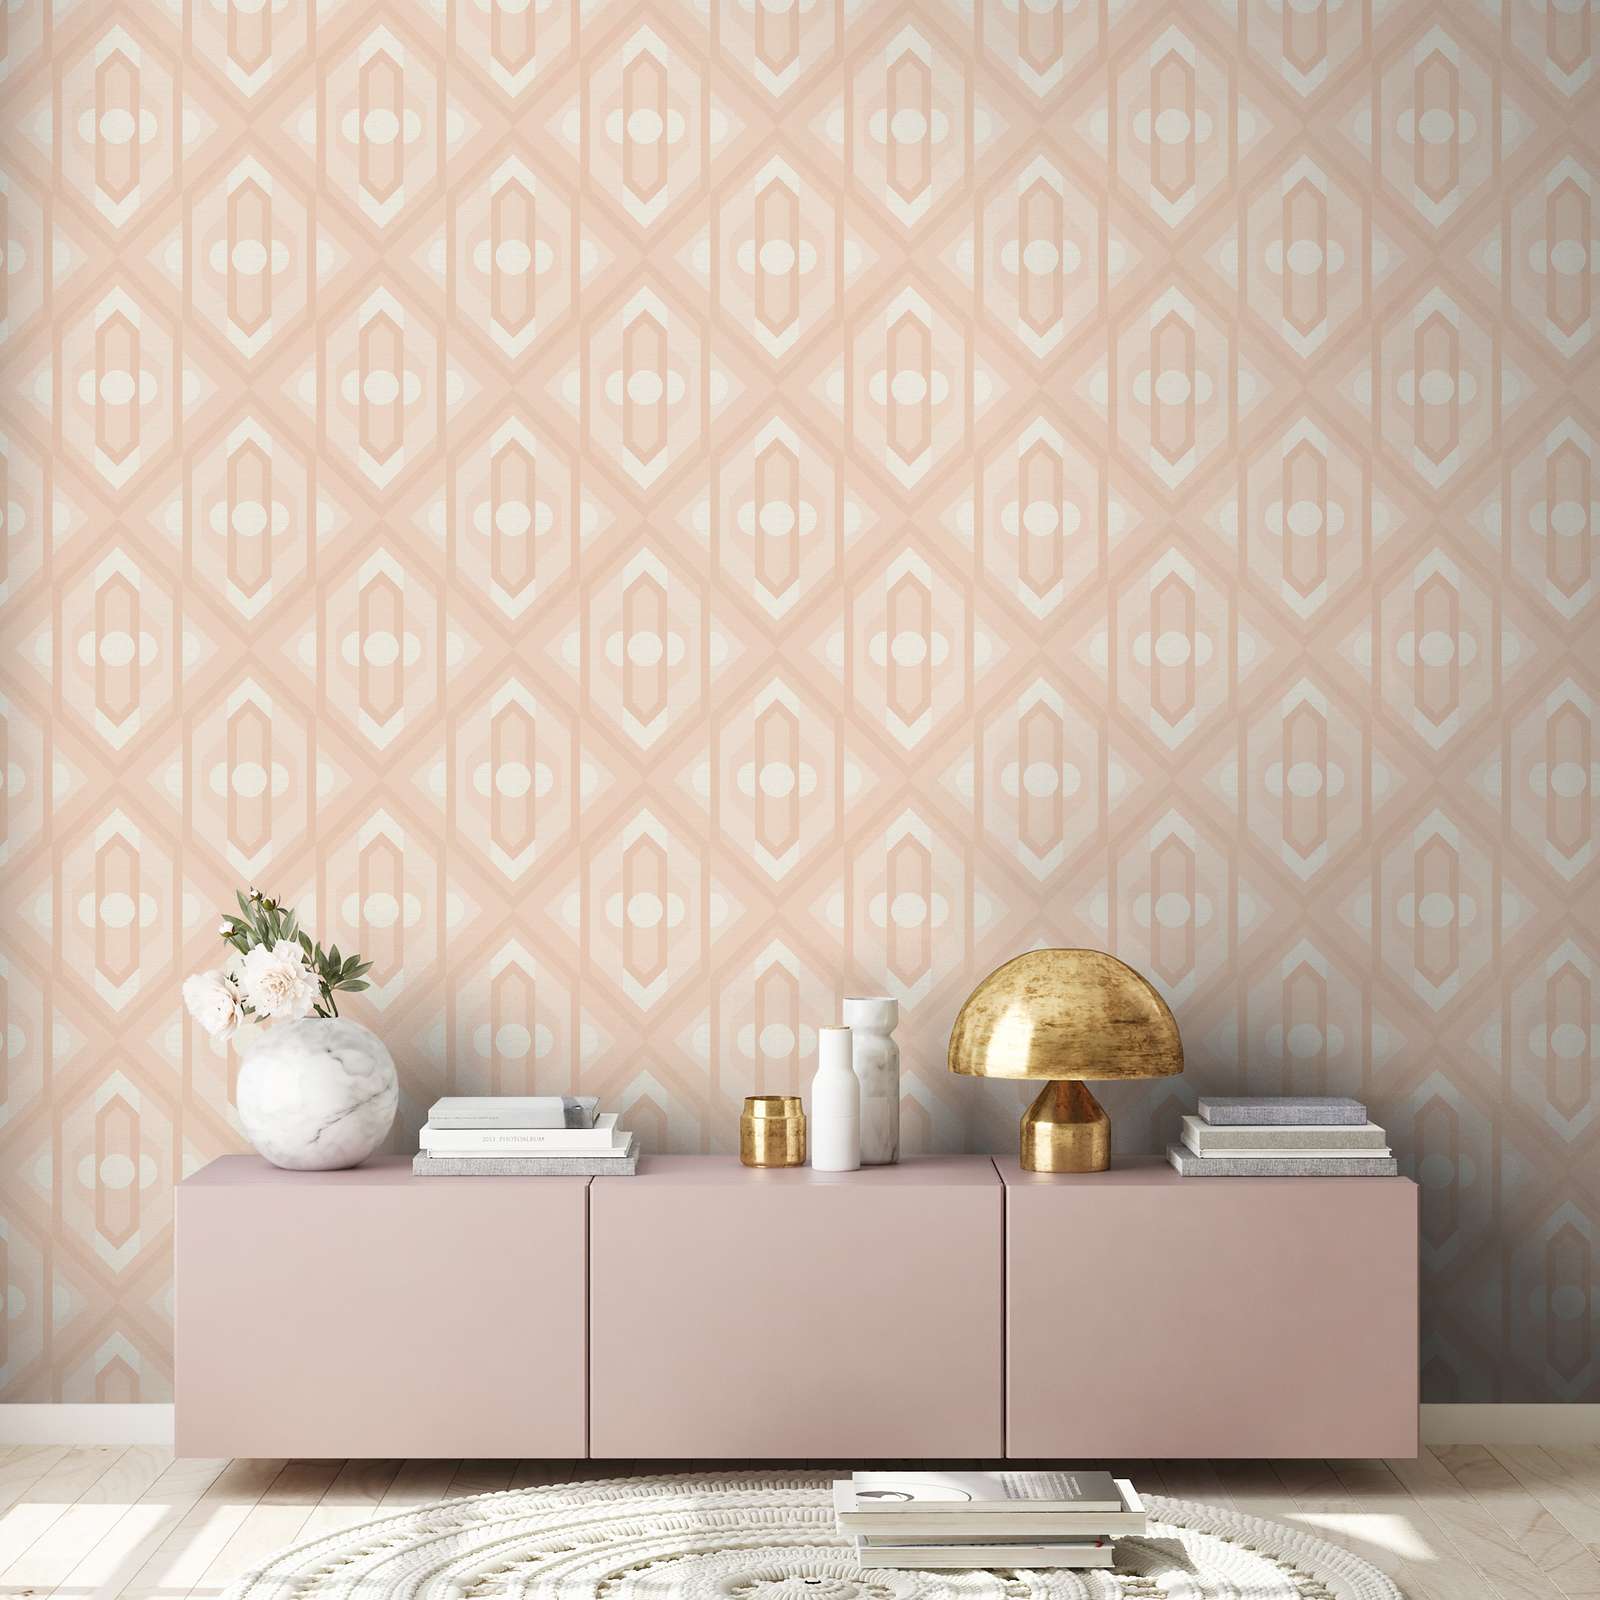             Retro Tapete mit geometrischen Ornamenten in sanften Farben – Beige, Creme, Weiß
        